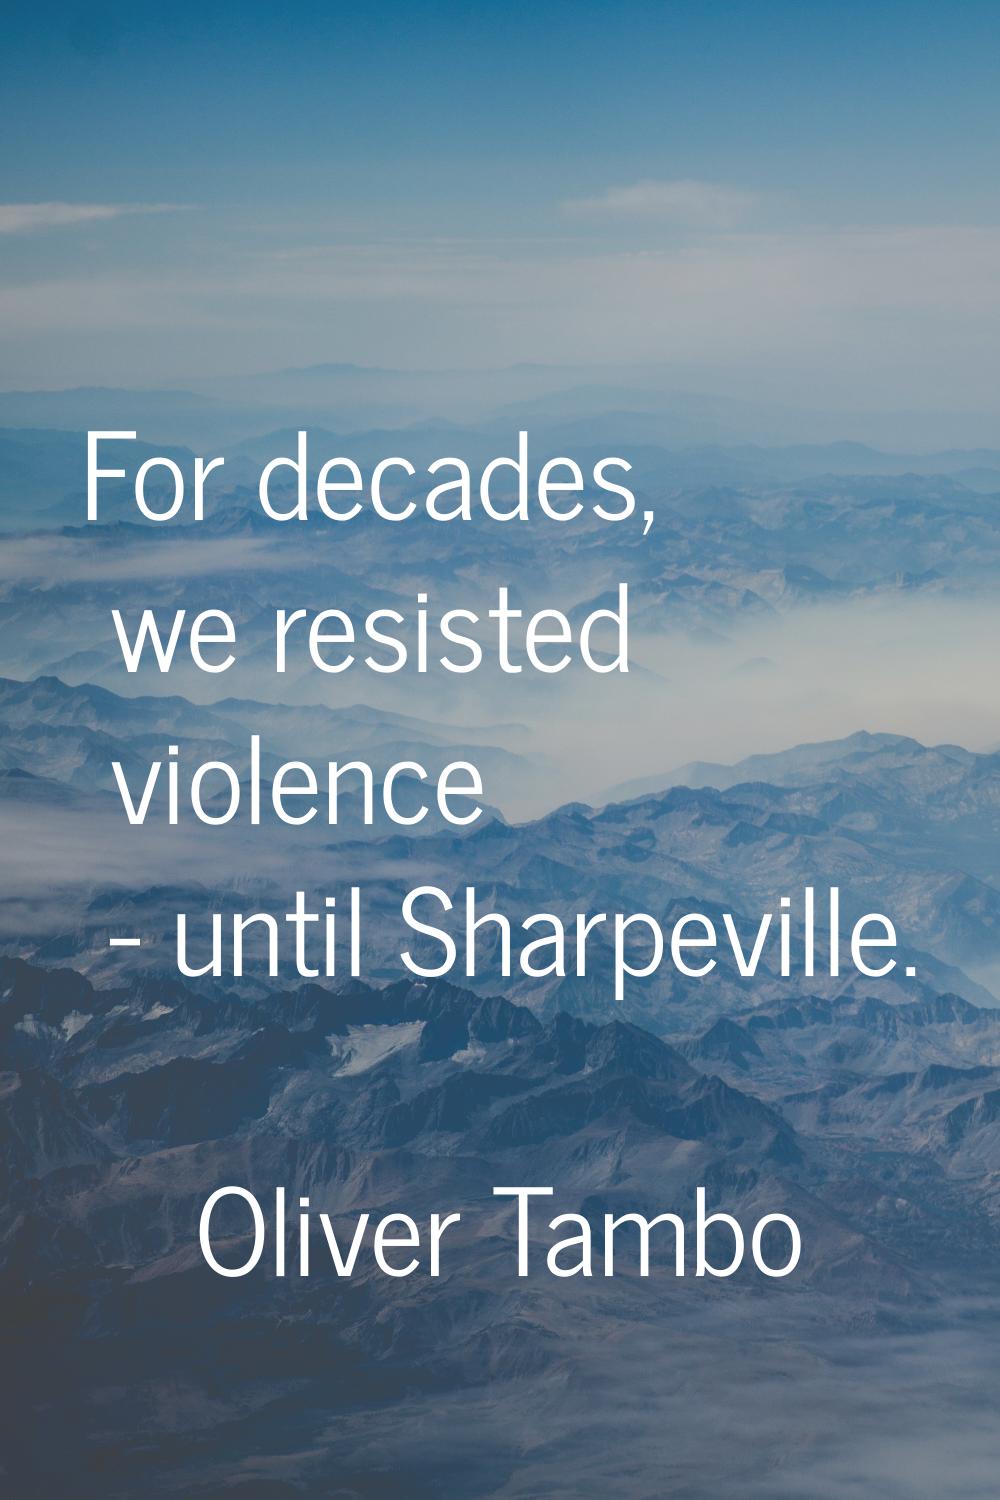 For decades, we resisted violence - until Sharpeville.